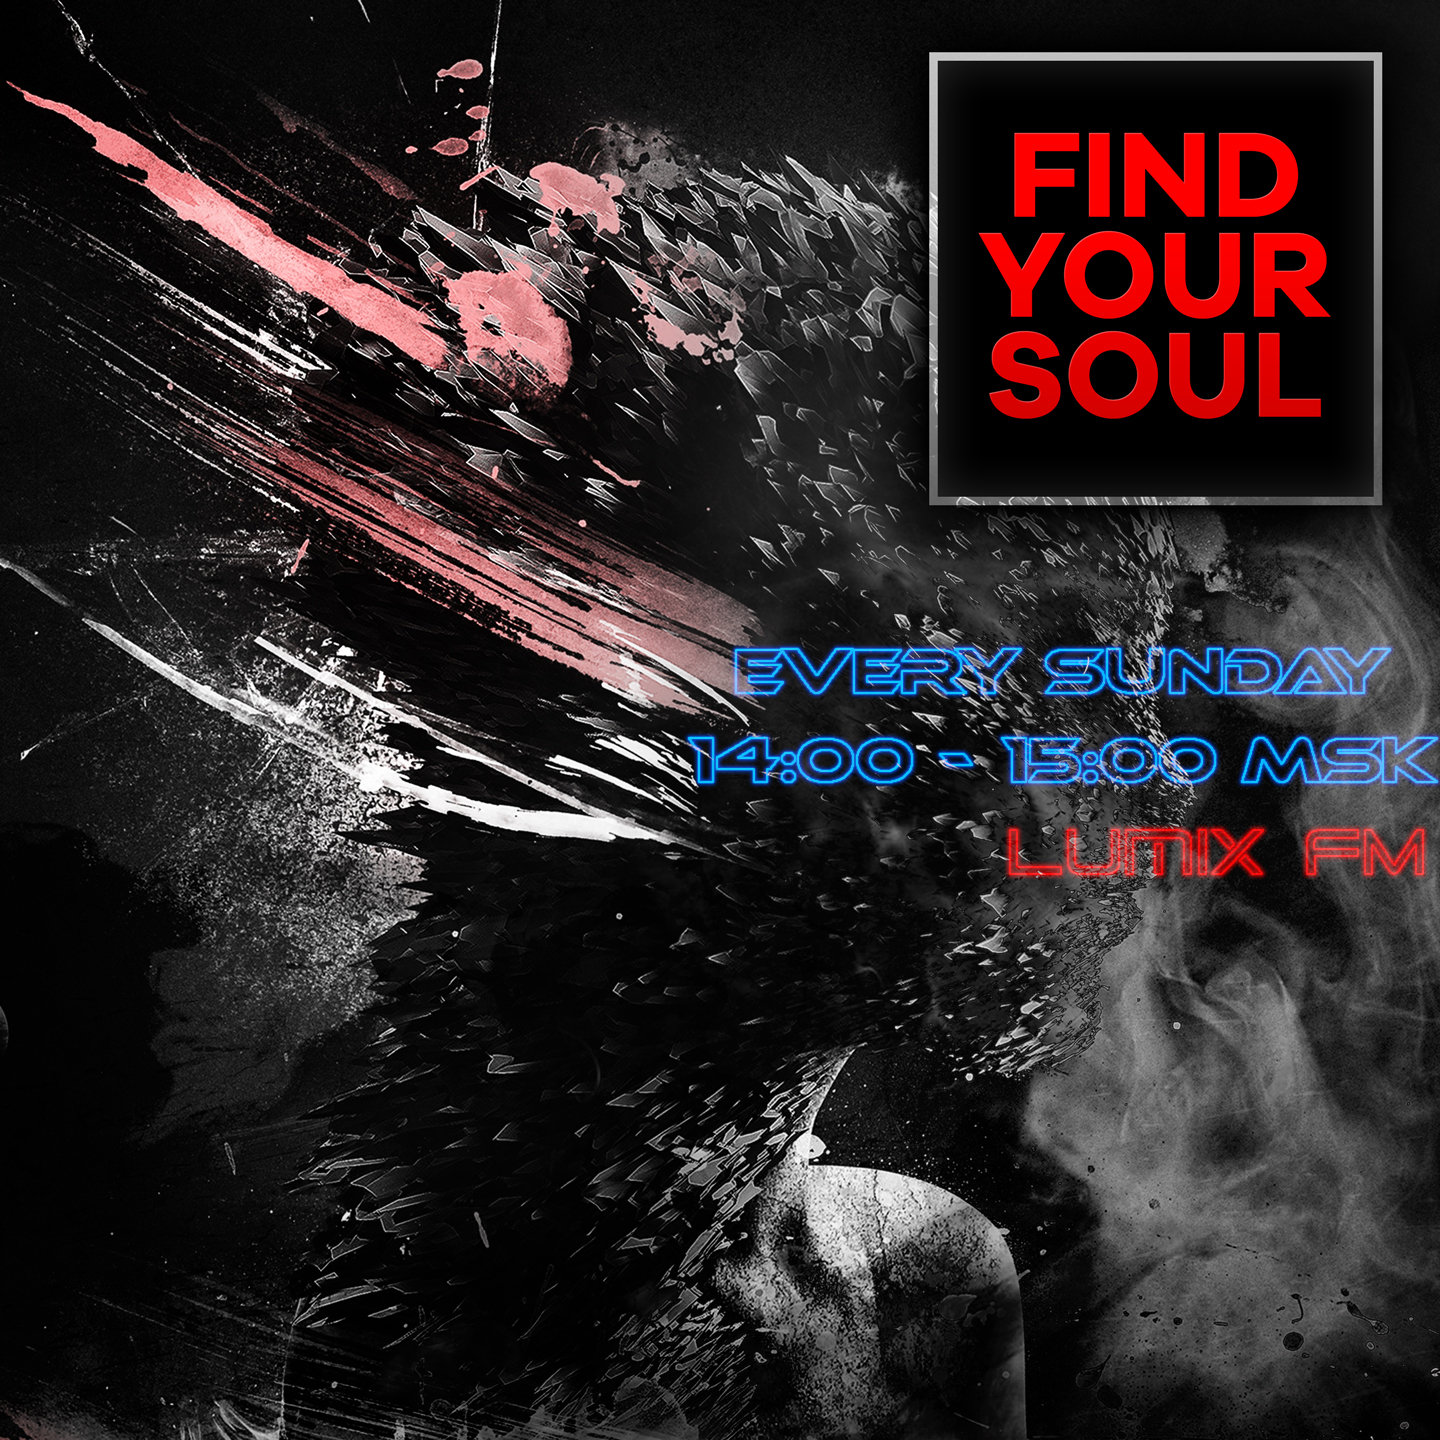 Find-Your-Soul_Lumix-FM